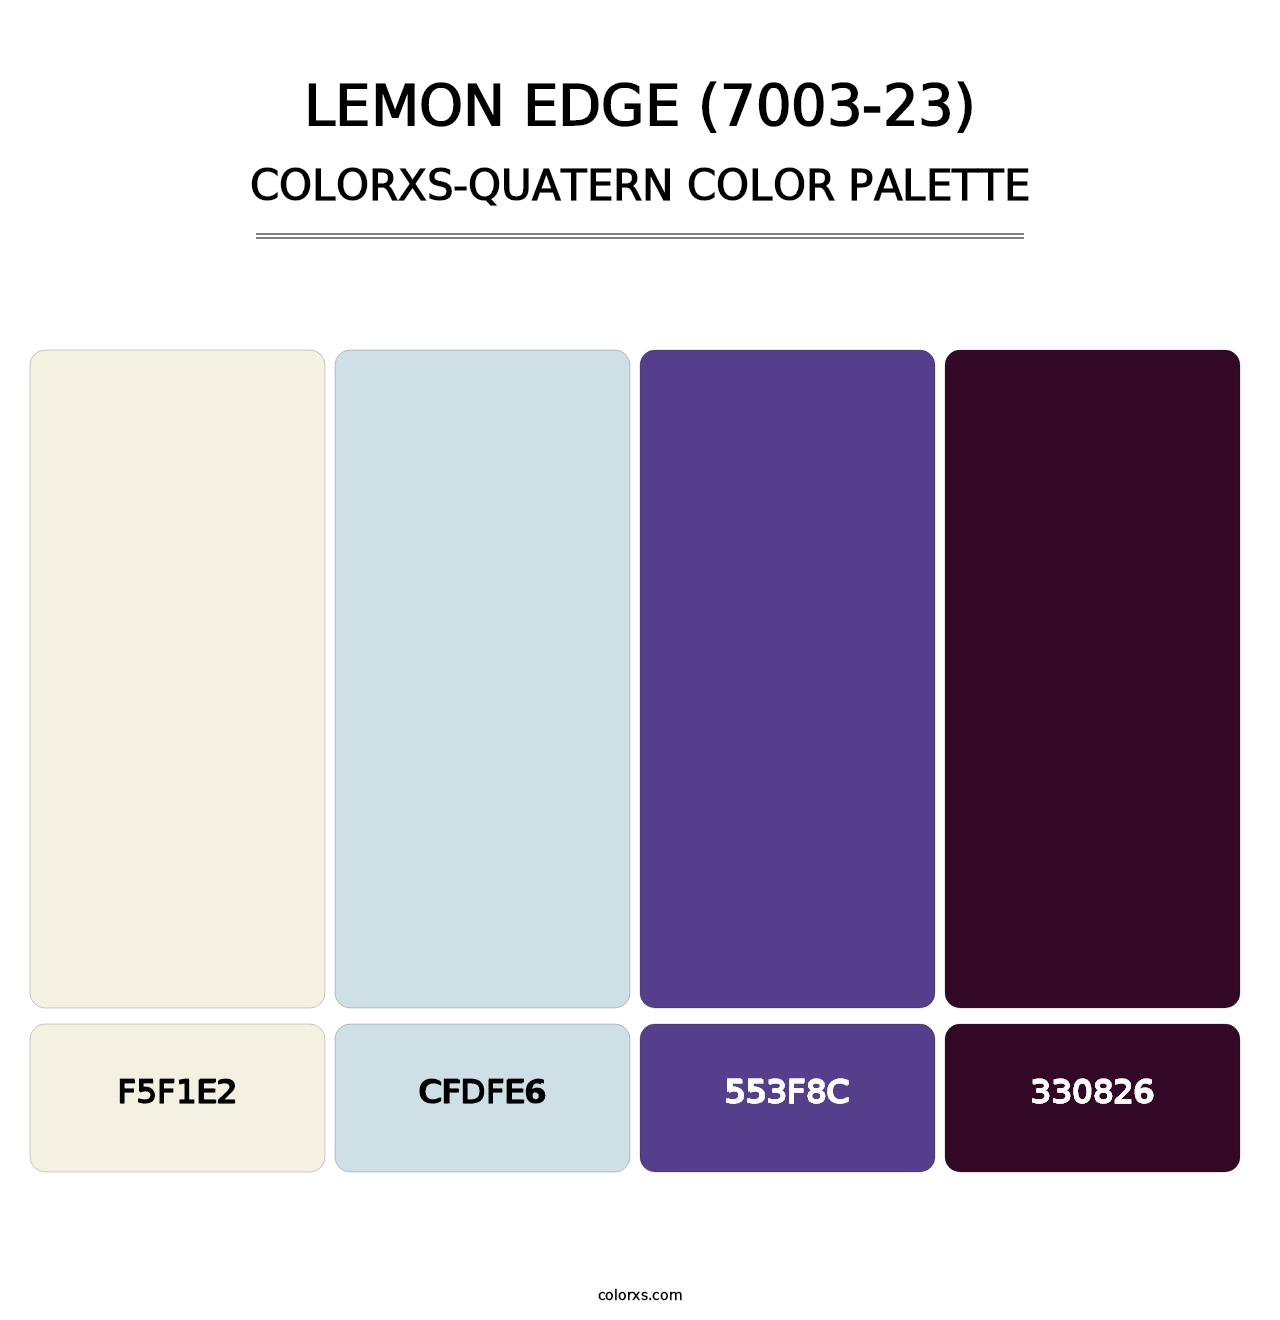 Lemon Edge (7003-23) - Colorxs Quatern Palette